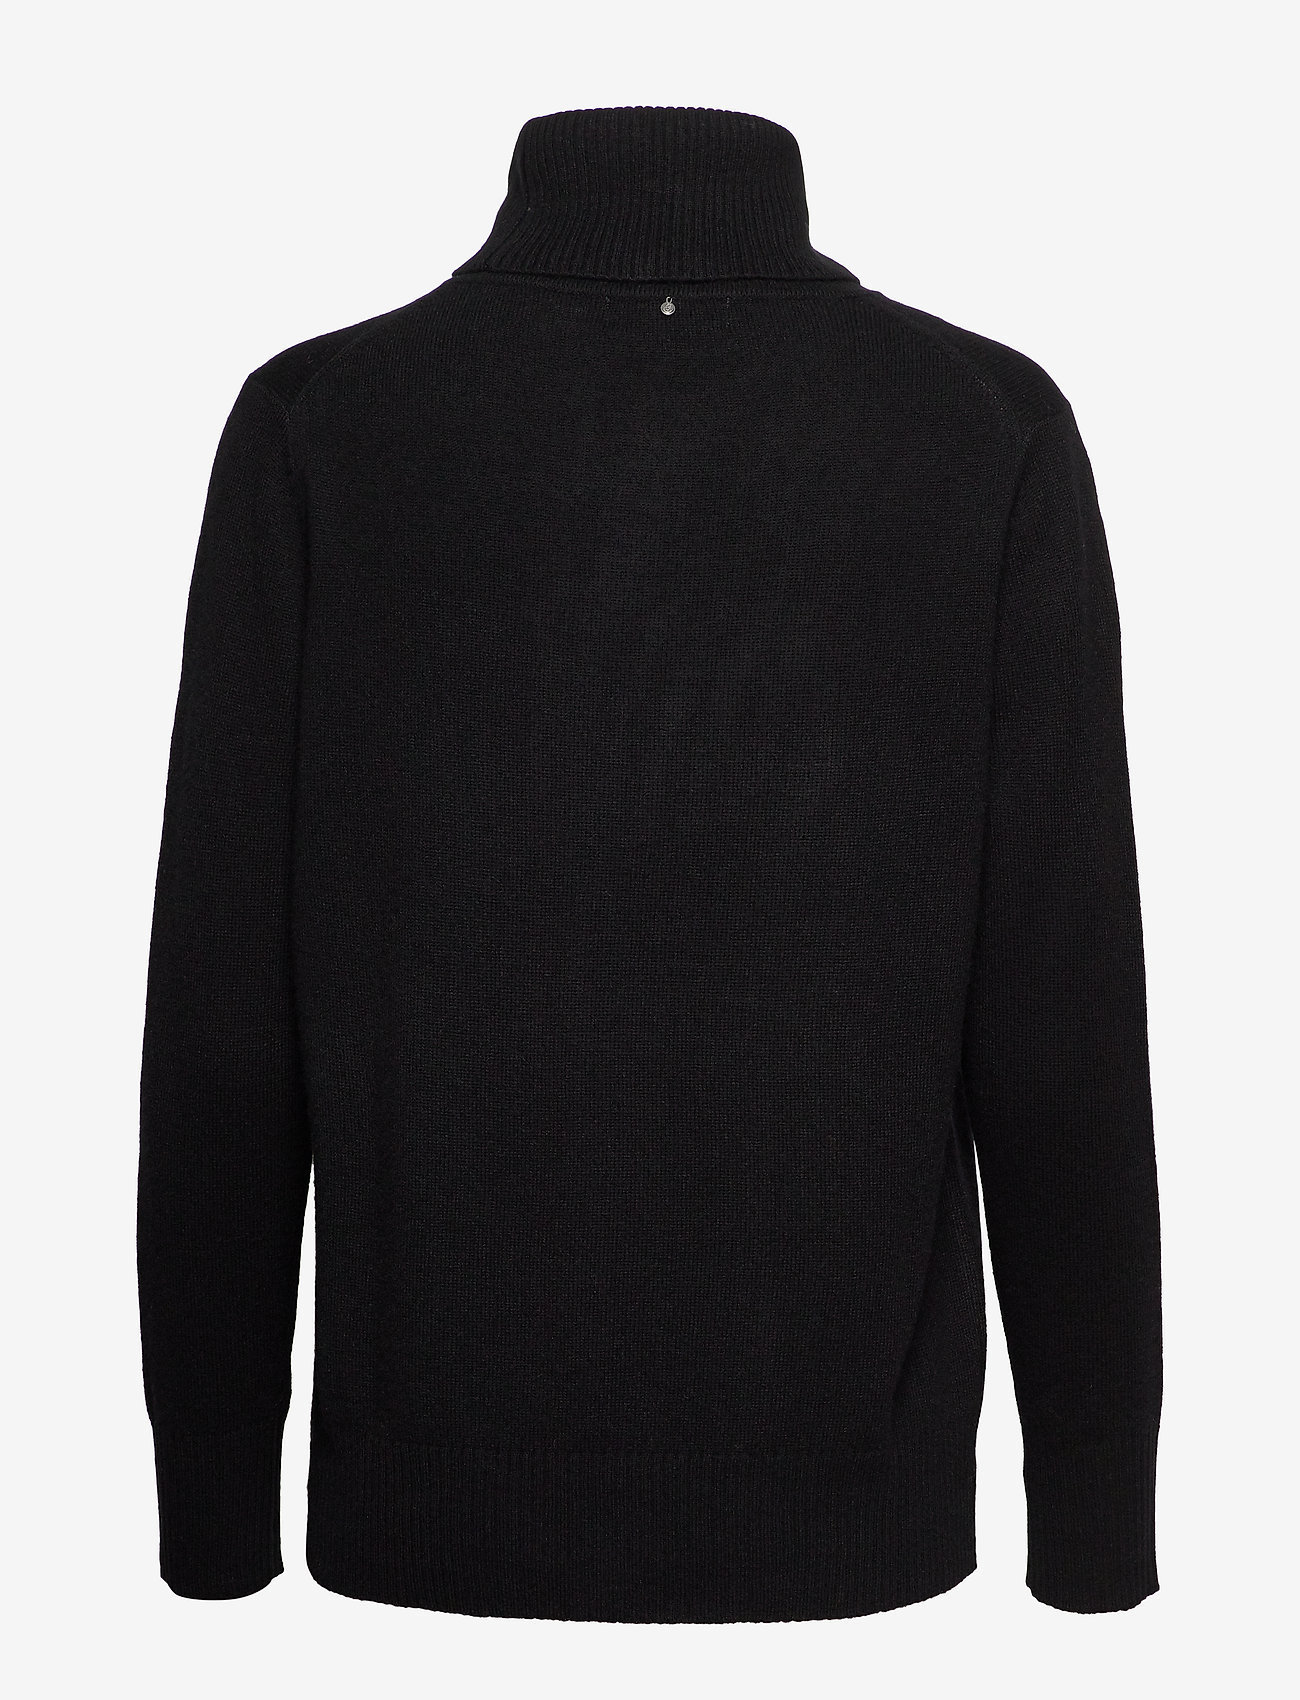 Rosemunde - Wool & cashmere pullover - polotröjor - black - 1